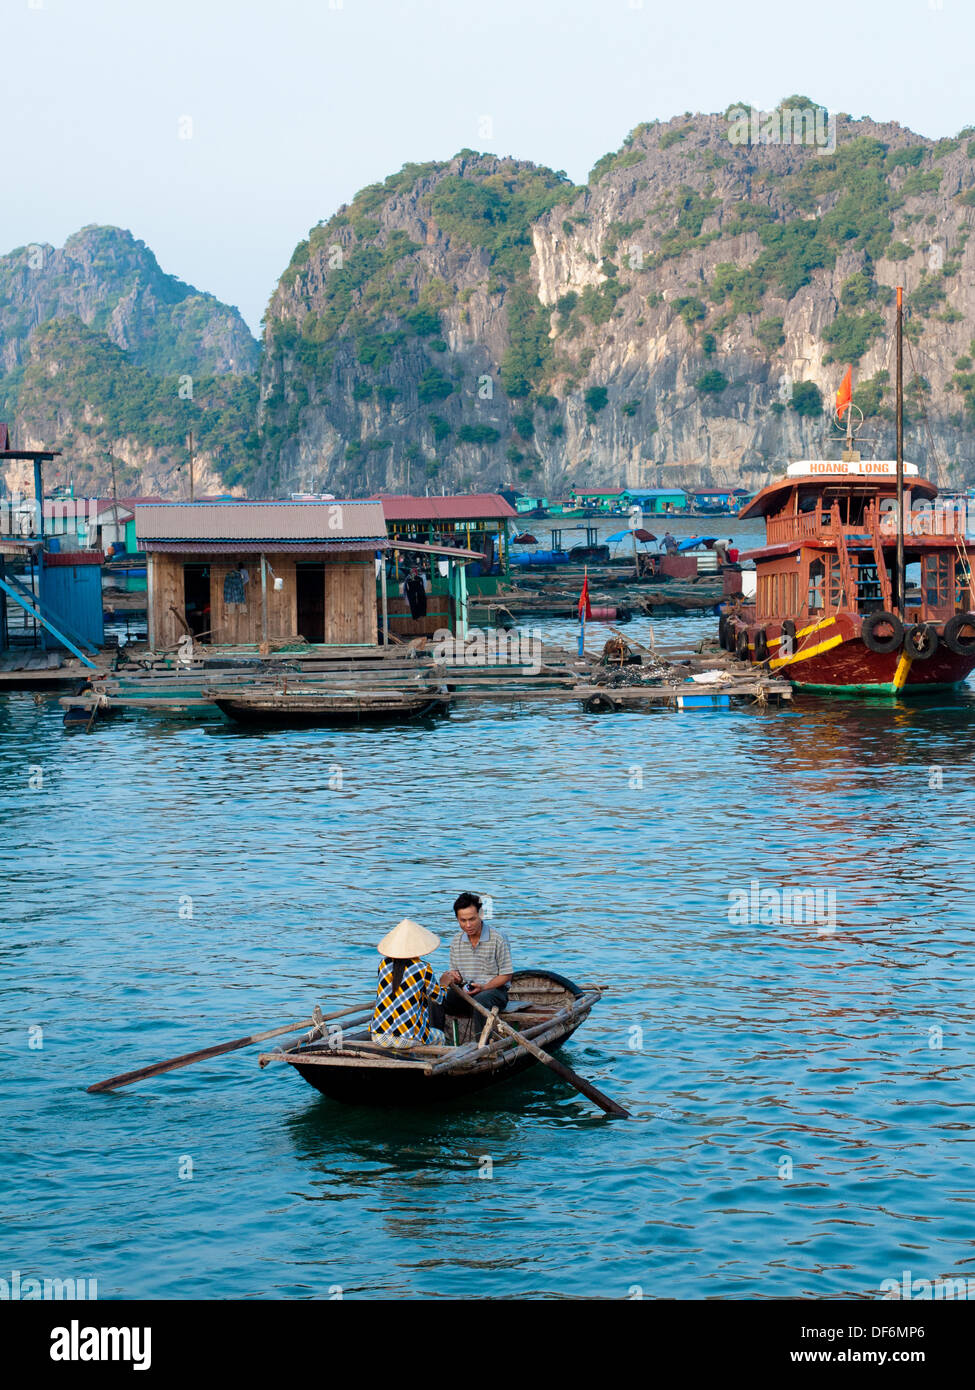 Un vietnamien l'homme et la femme dans une barque près d'un village flottant au large de l'île de Cat Ba dans la baie de Lan Ha, Halong Bay, Vietnam. Banque D'Images